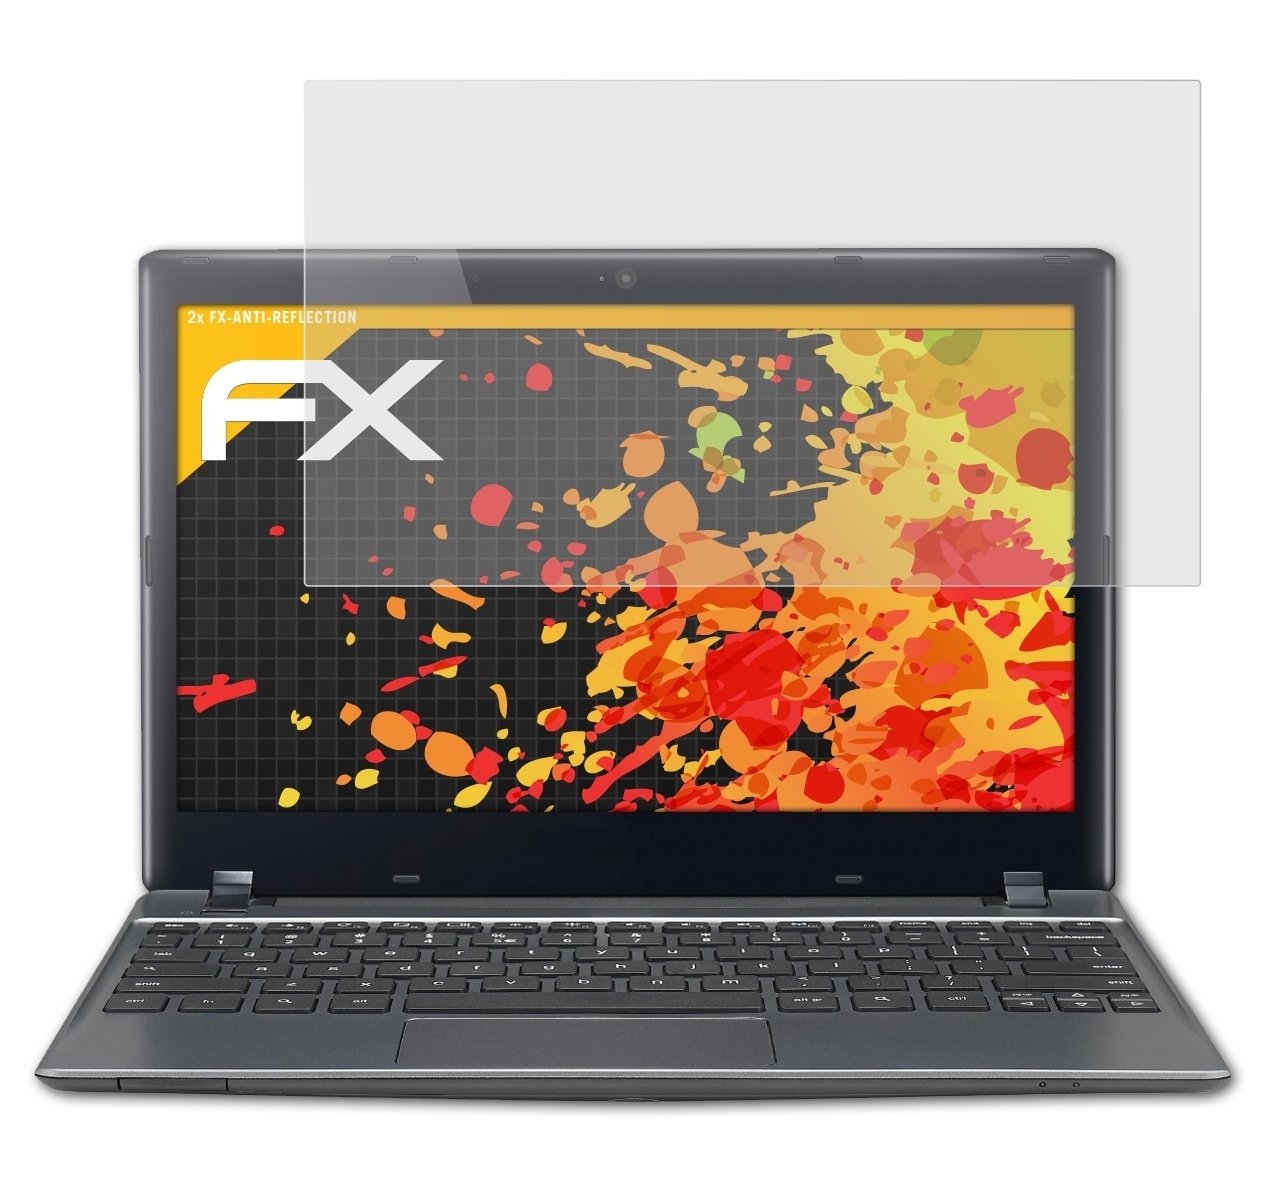 2x Google (C710, ATFOLIX C7 (Acer)) Displayschutz(für FX-Antireflex Inch) Chromebook 11.6